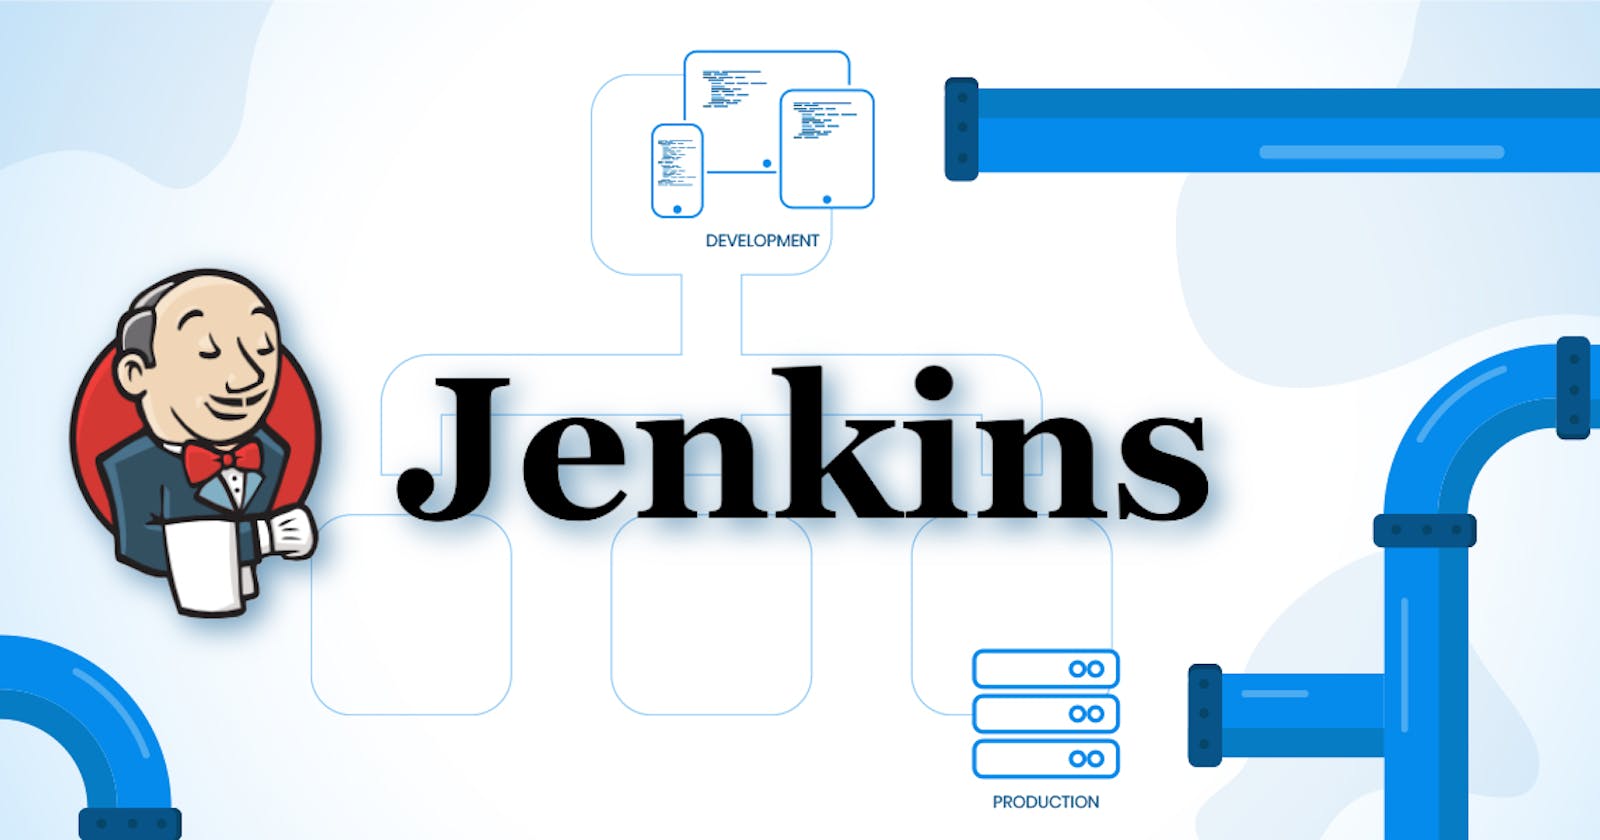 Jenkins in the Enterprise: Streamline Your DevOps Workflow